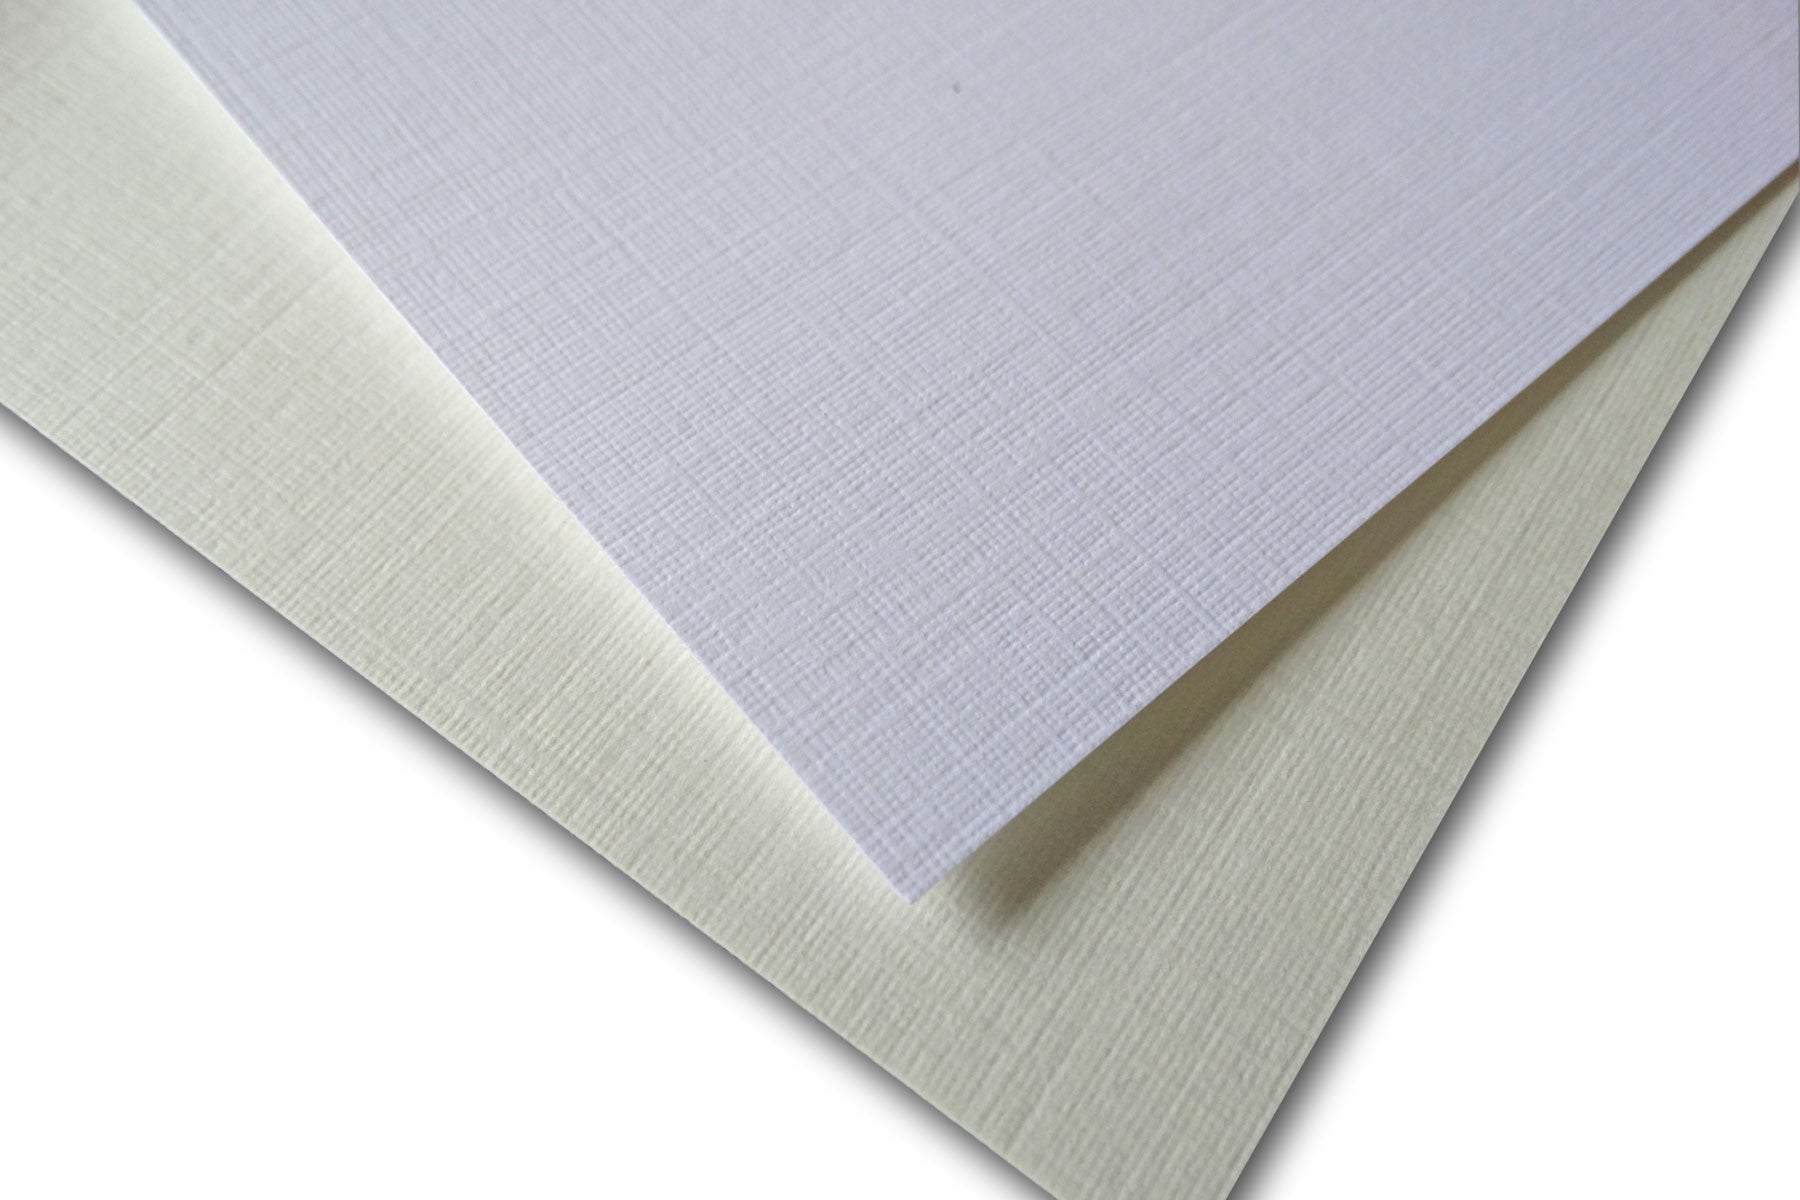 Via Linen 8 1/2 x 11 in 100 lb. Pure White Linen Paper